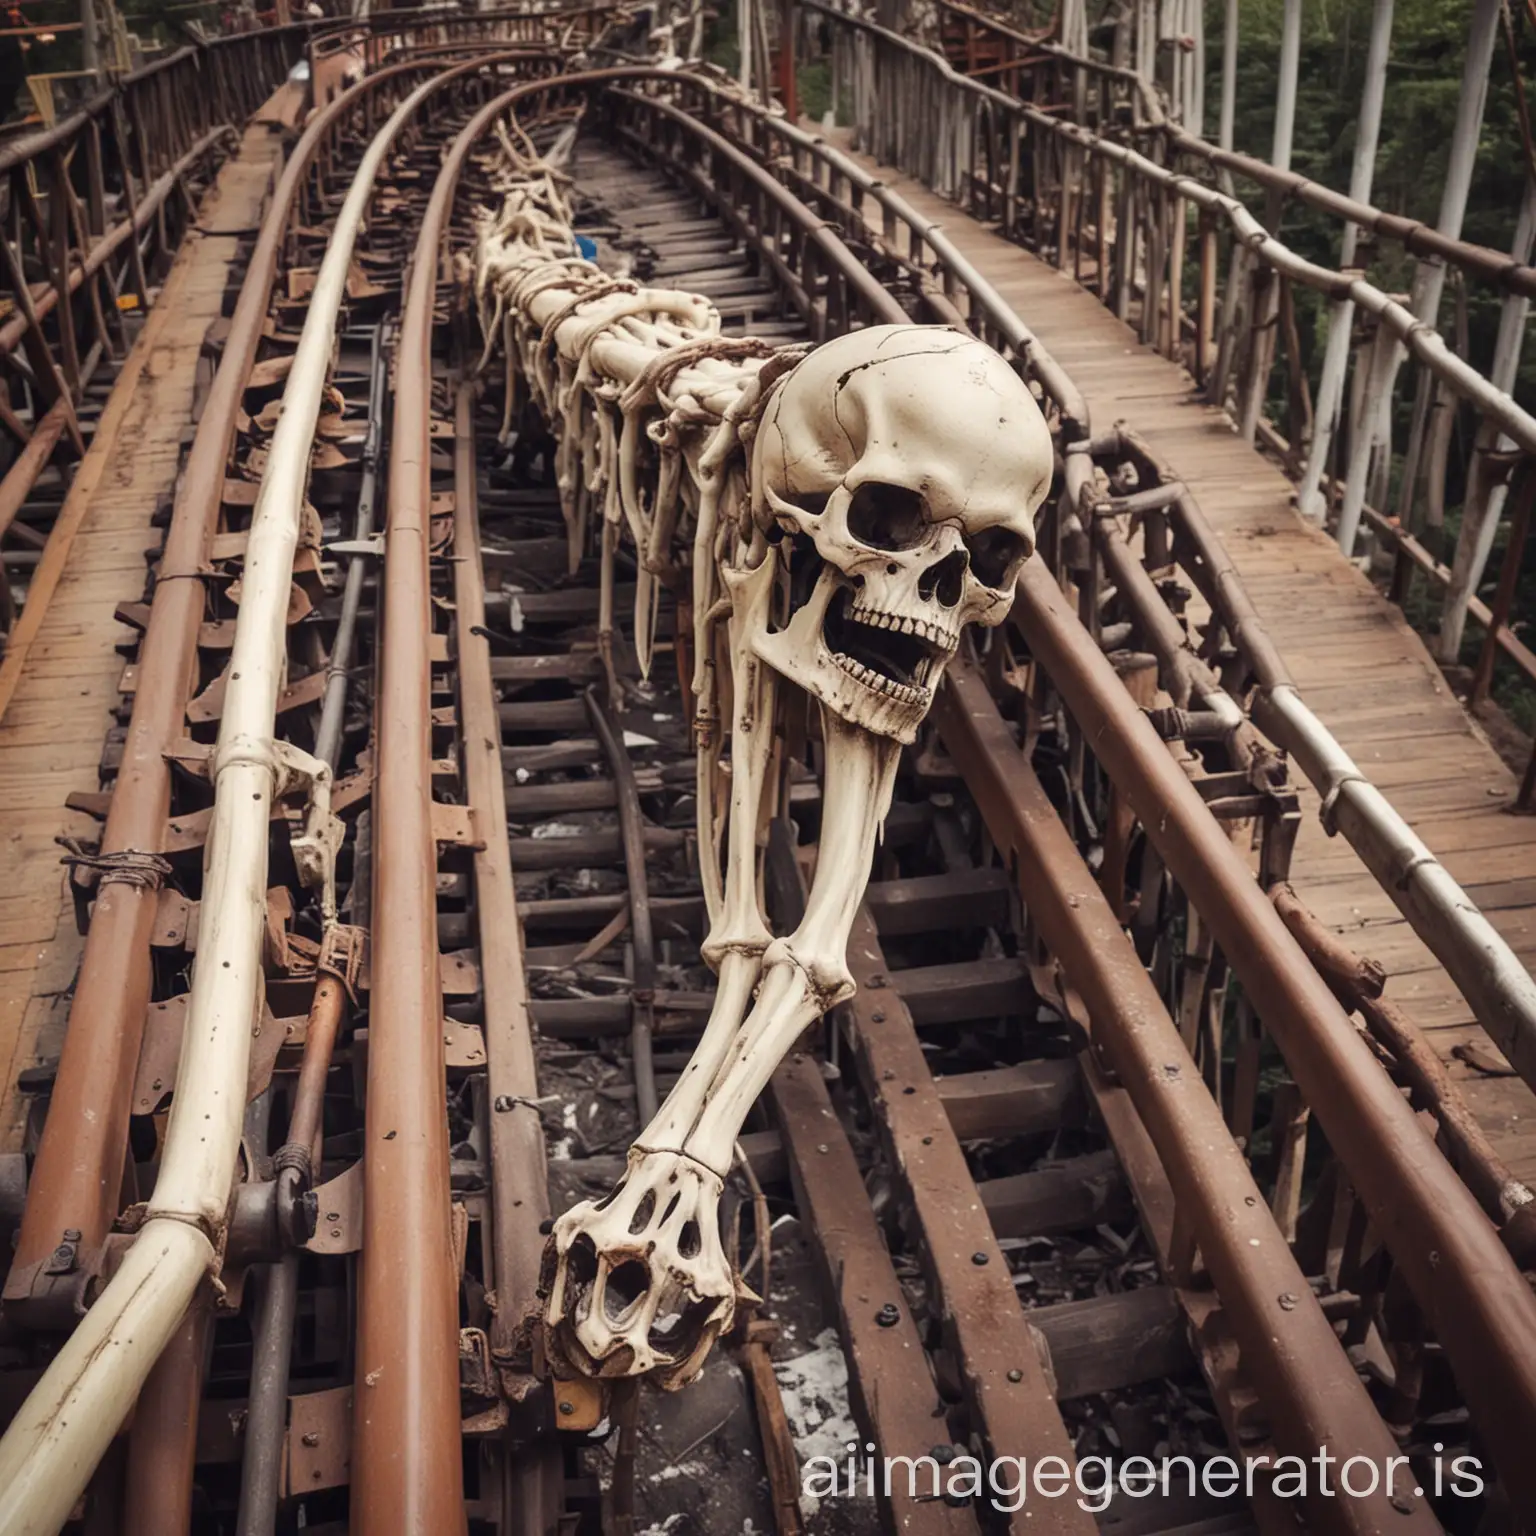 Thrilling-Roller-Coaster-Adventure-Femur-Bone-Amusement-Park-Ride